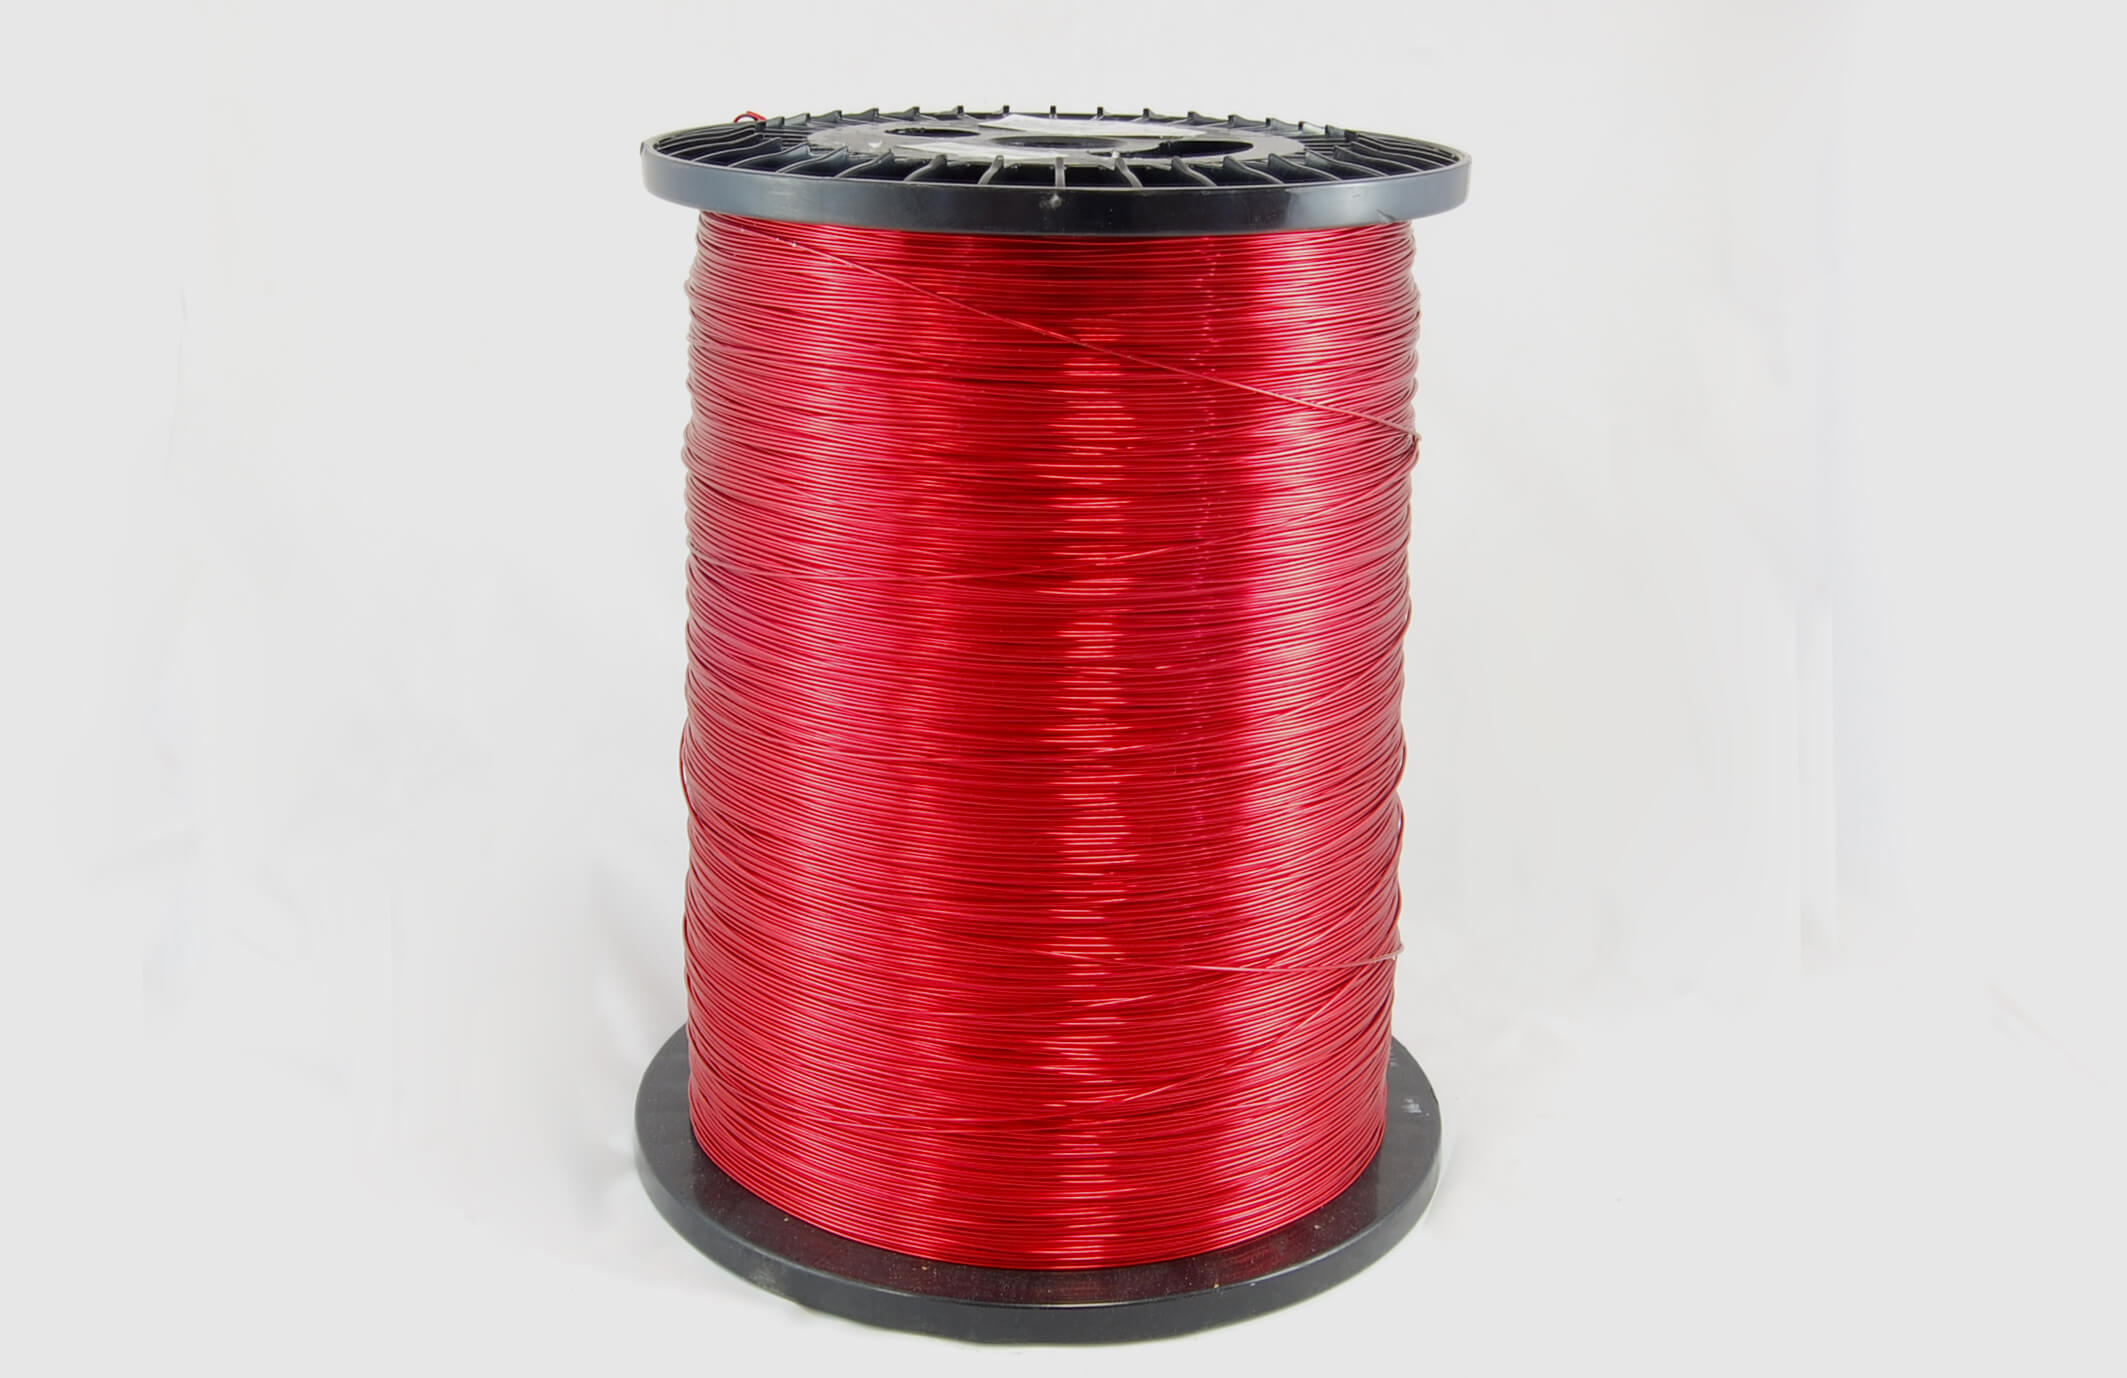 #17 Heavy Nysol  Round HNSR MW 80 Copper Magnet Wire 155°C, red, 85 LB box (average wght.)